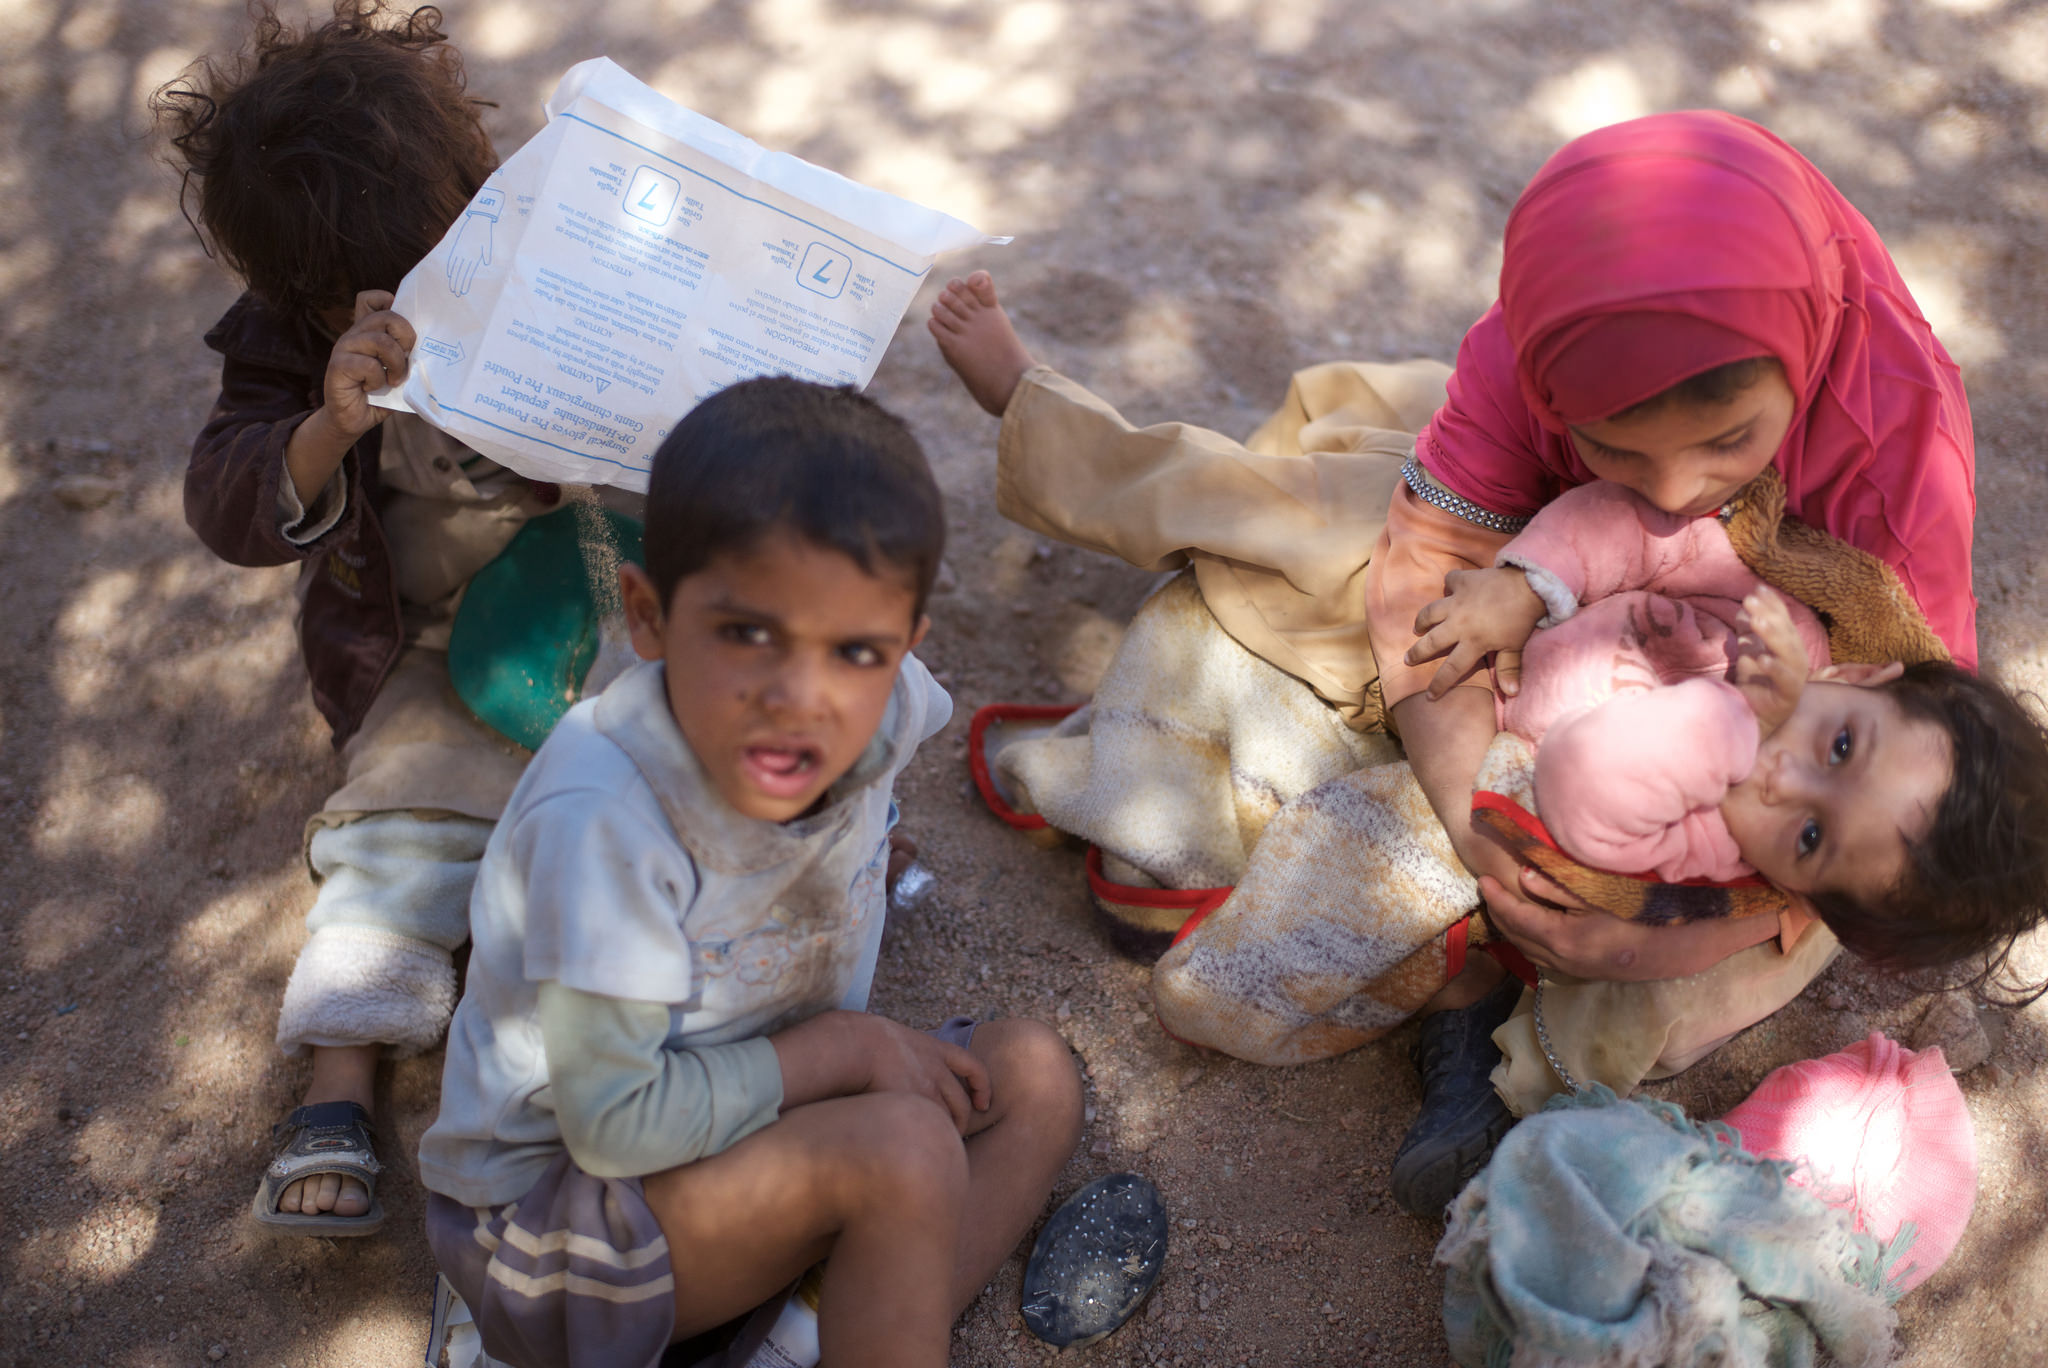 yemen-children-crisis-health-flickr